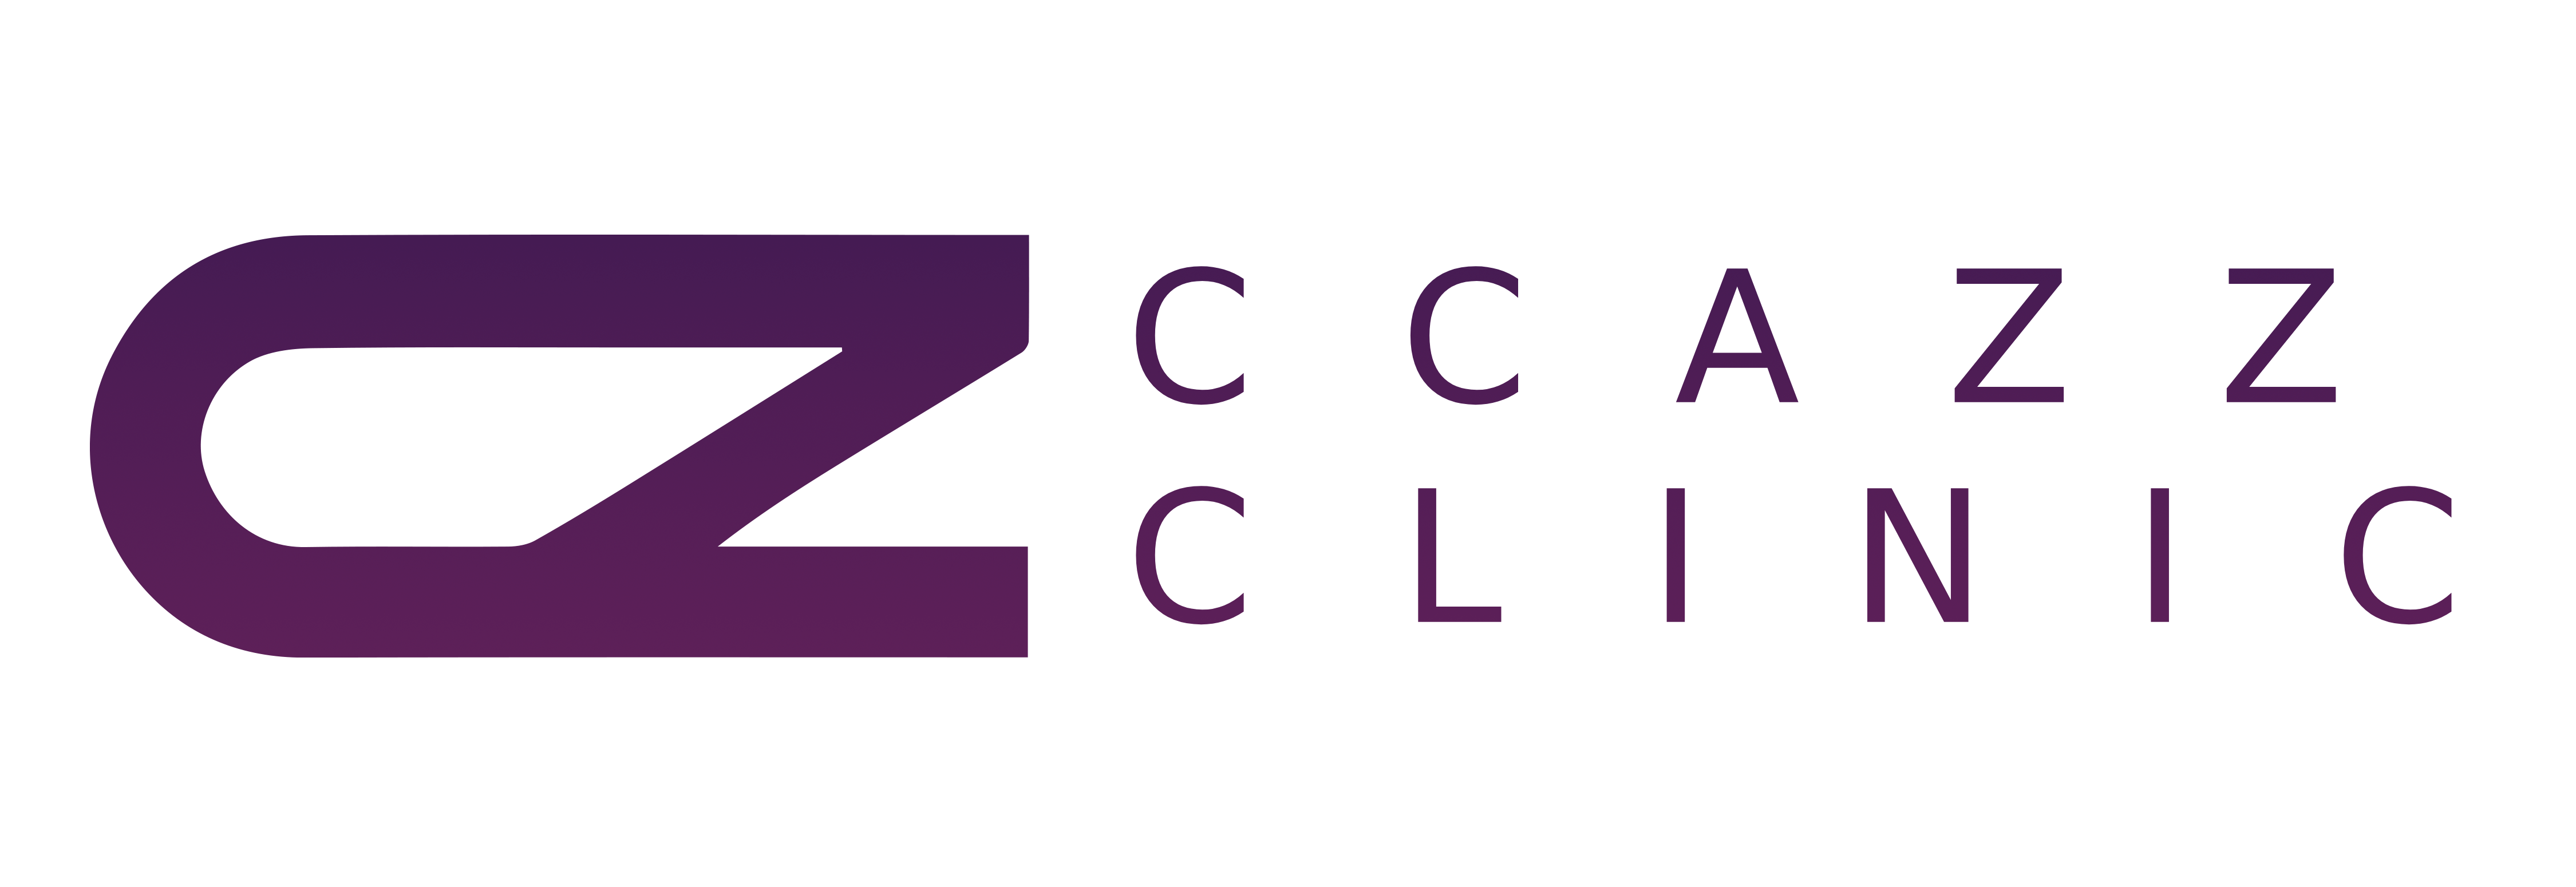 CCAZZ Clinic